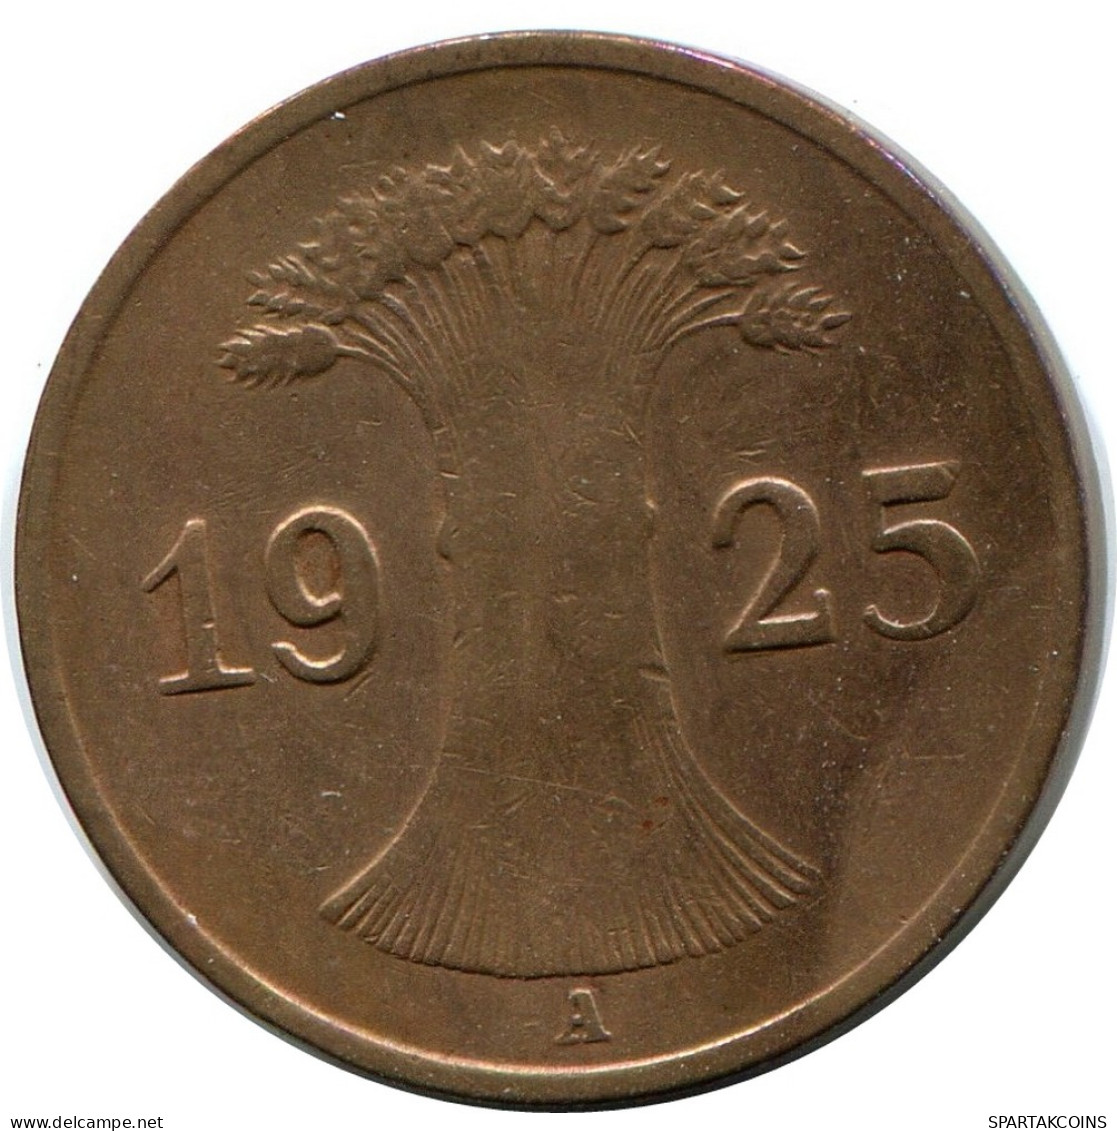 1 REICHSPFENNIG 1925 A GERMANY Coin #DB774.U - 1 Rentenpfennig & 1 Reichspfennig